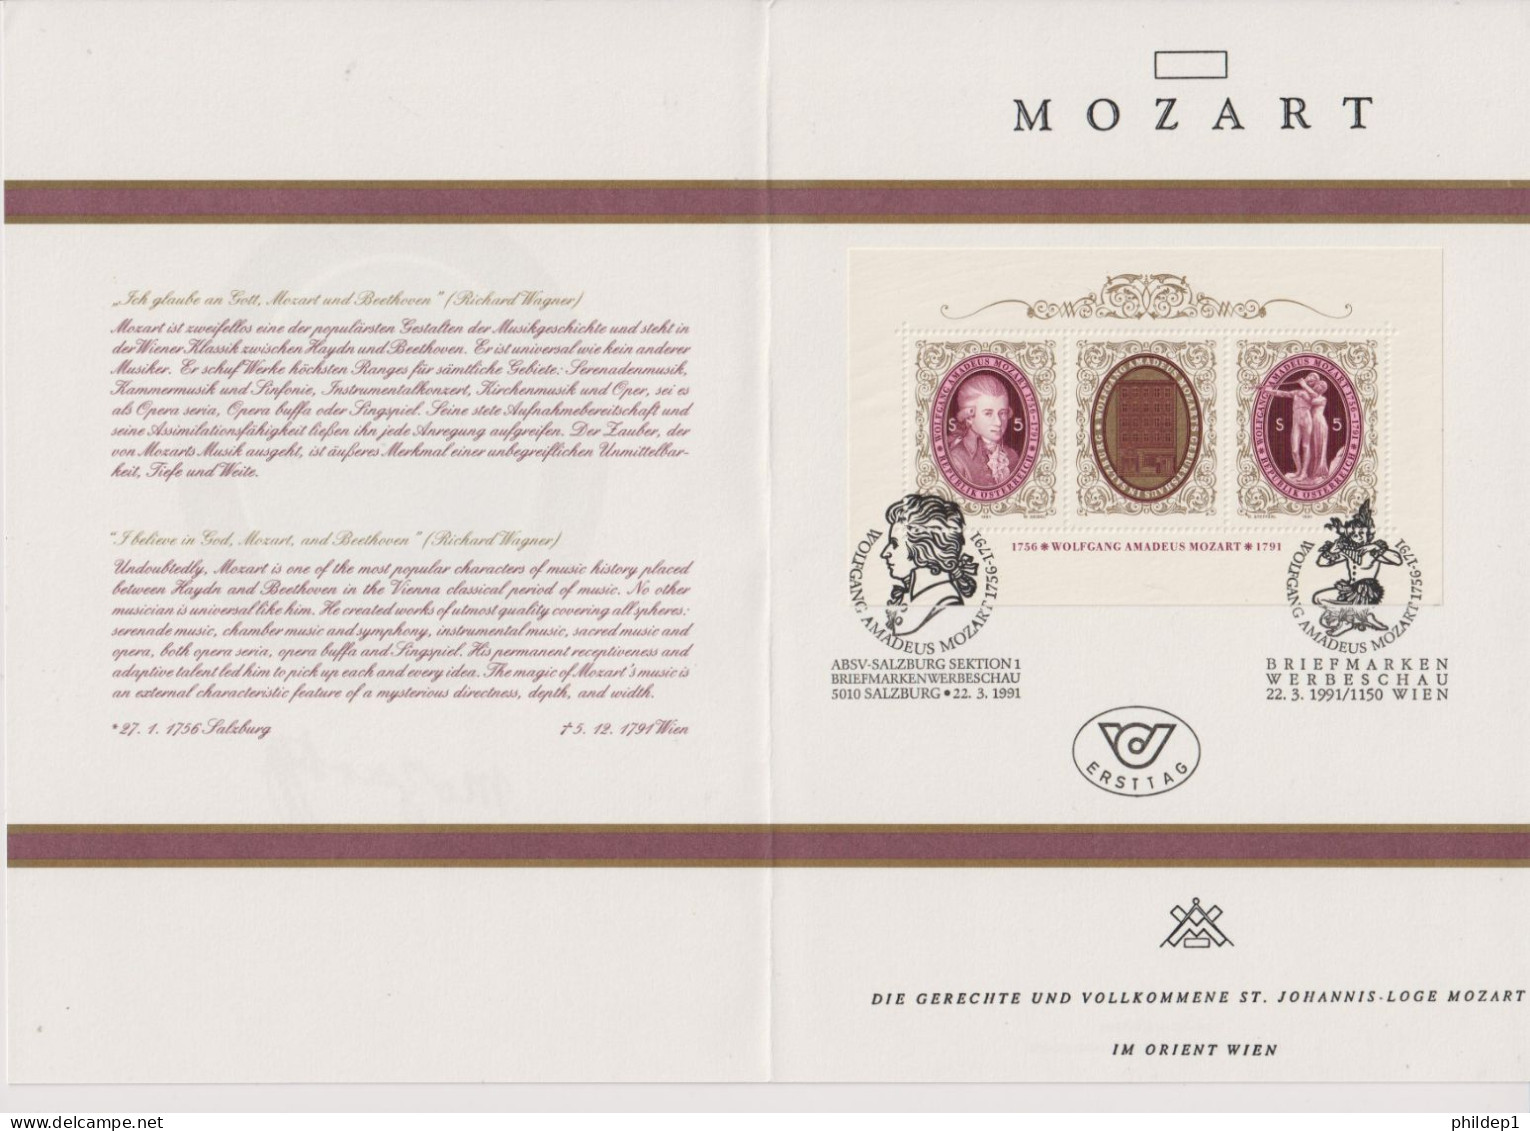 Autriche: Franc Maçonnerie: Superbe Document Sur Mozart Imprimé En Autriche Avec Photo Changeante - Freimaurerei